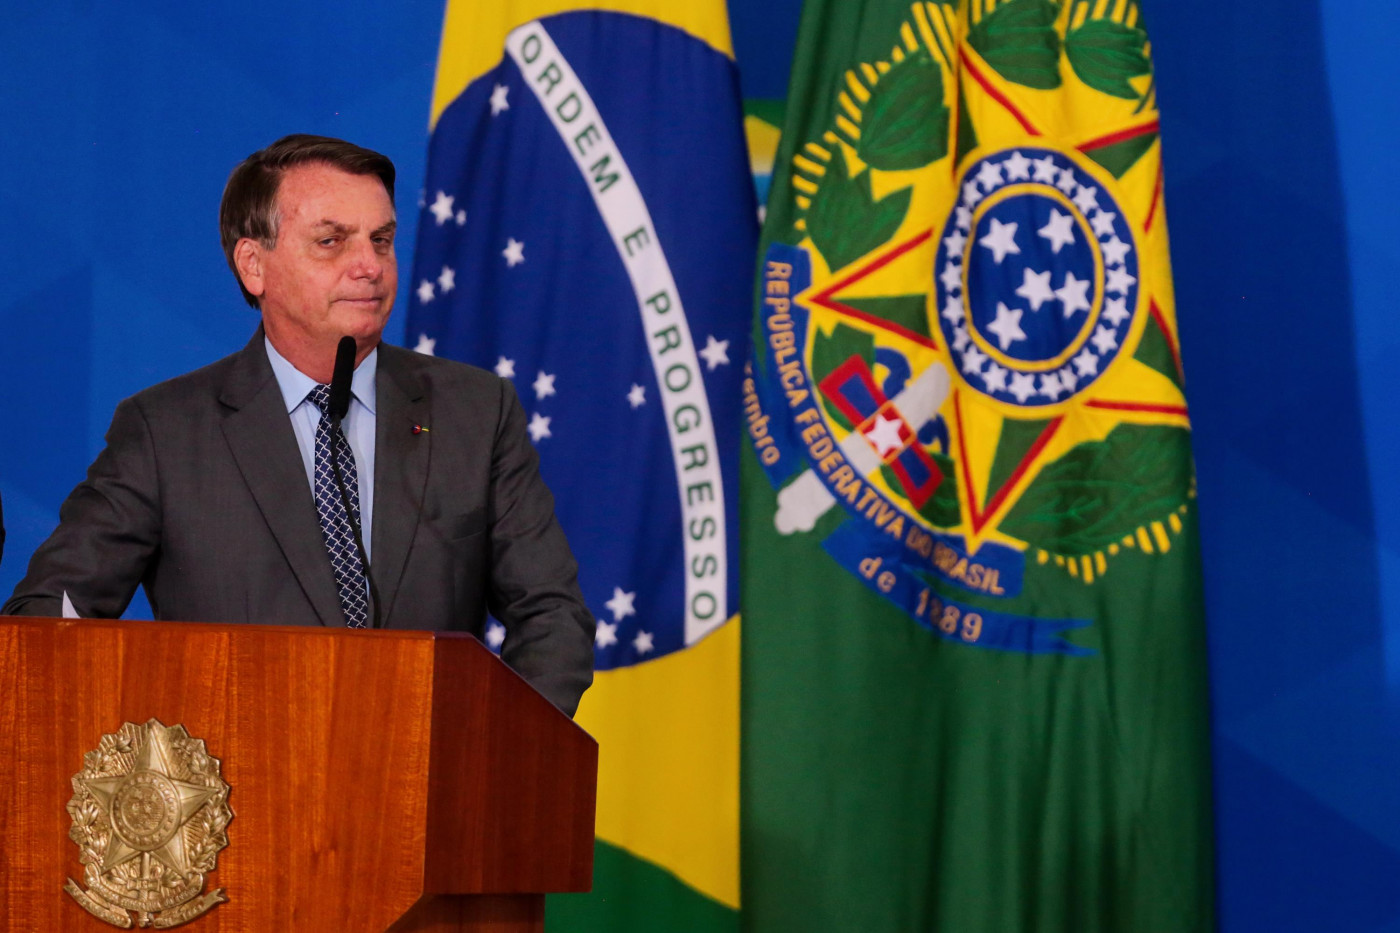 O presidente Jair Bolsonaro fazendo pronunciamento em frente à bandeira do Brasil e da República